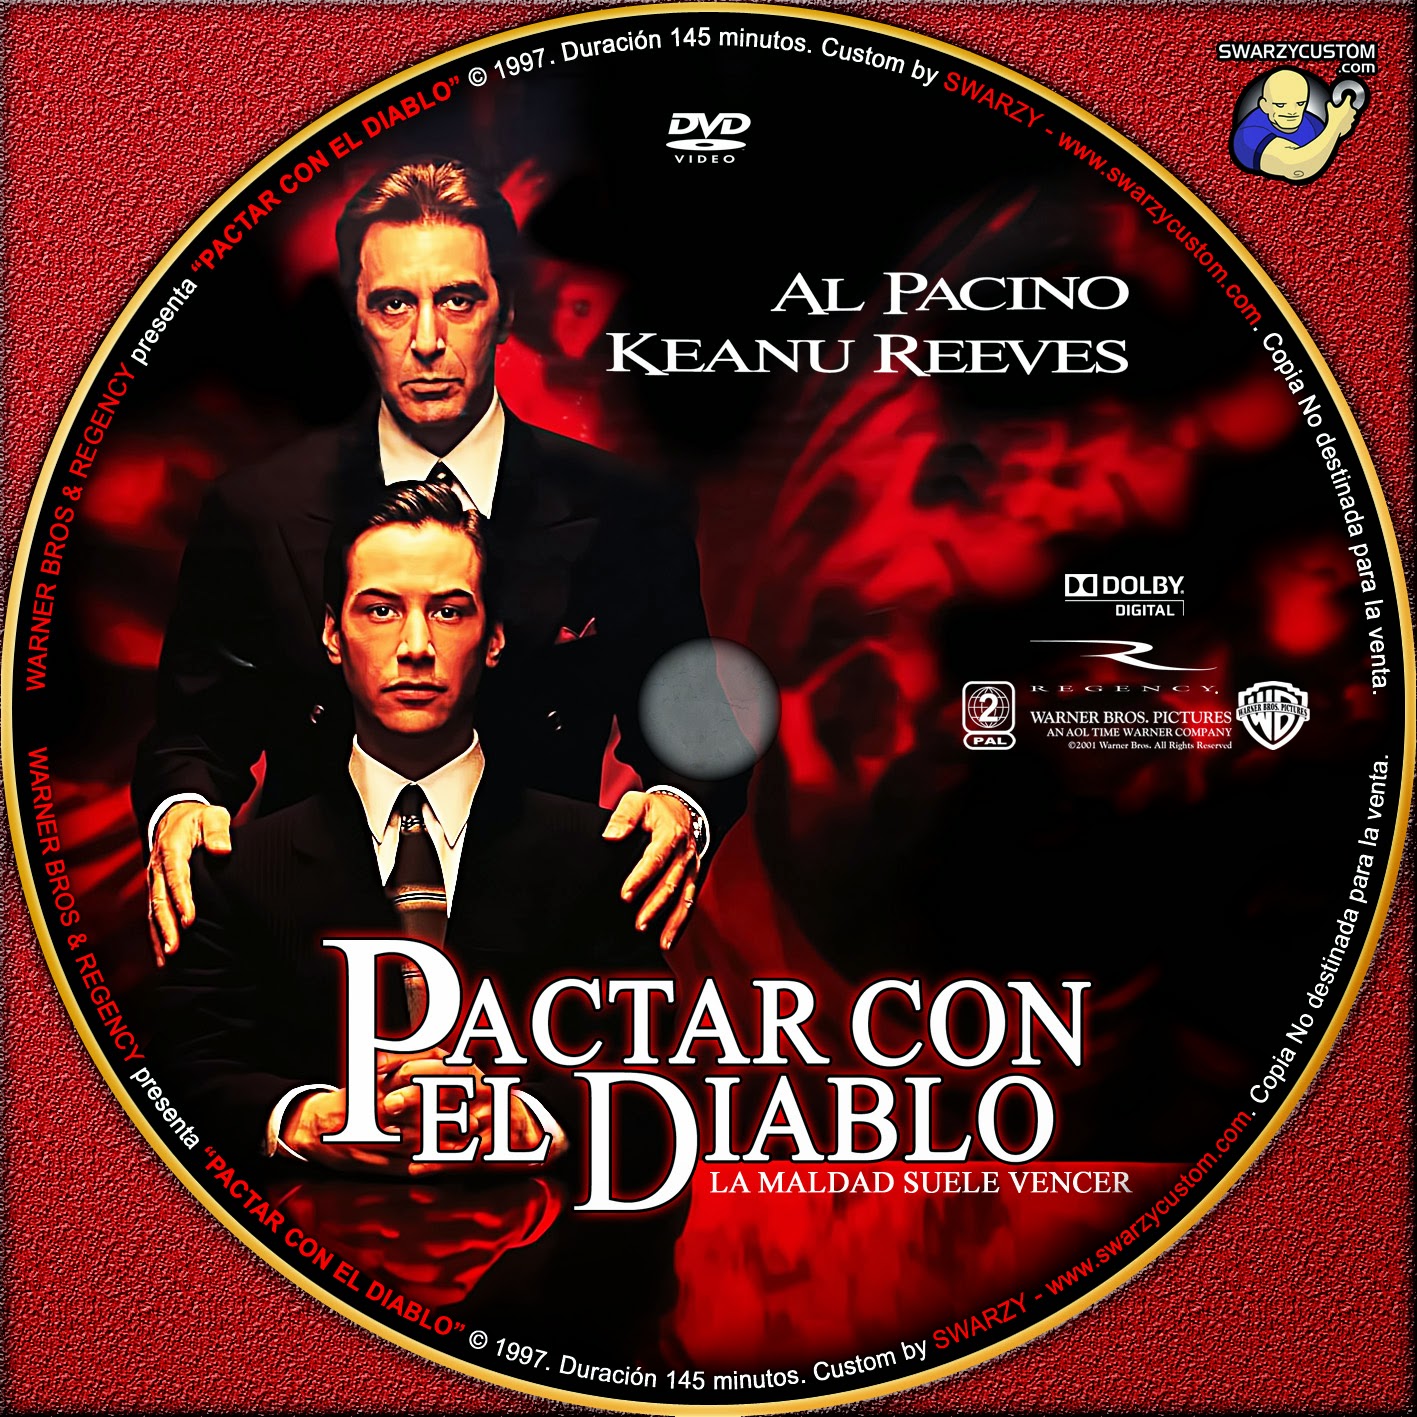 ABOGADO DEL DIABLO |DVD|